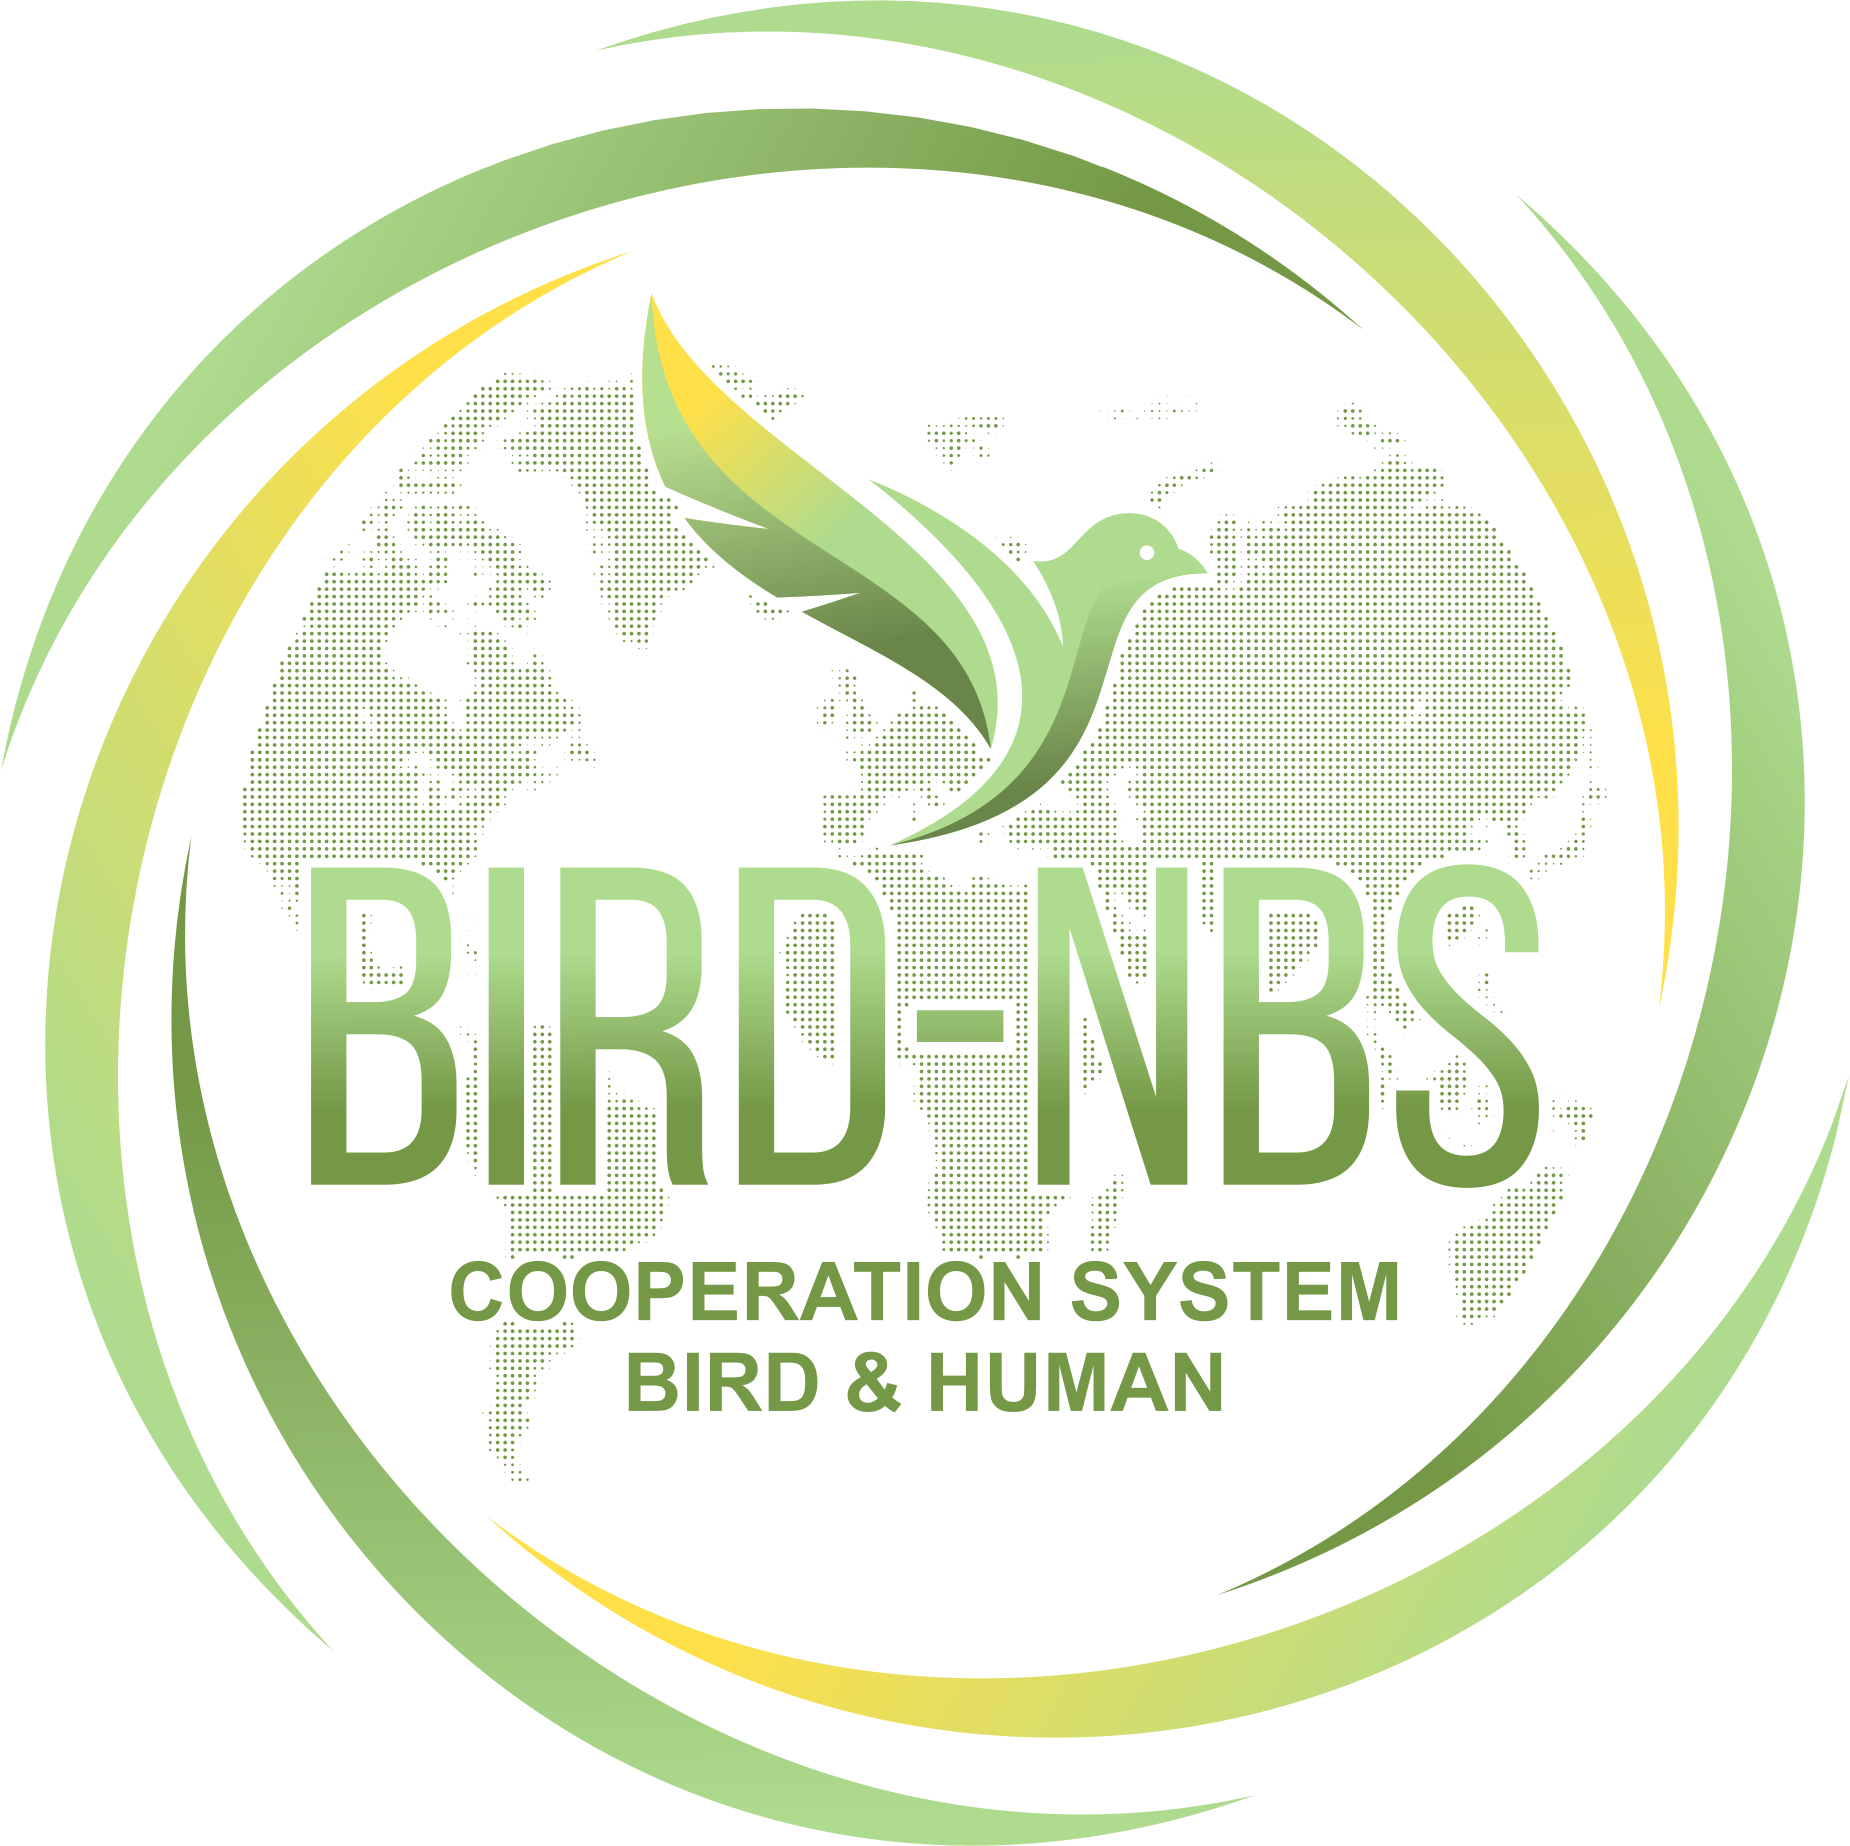 Bird-NBS_logo